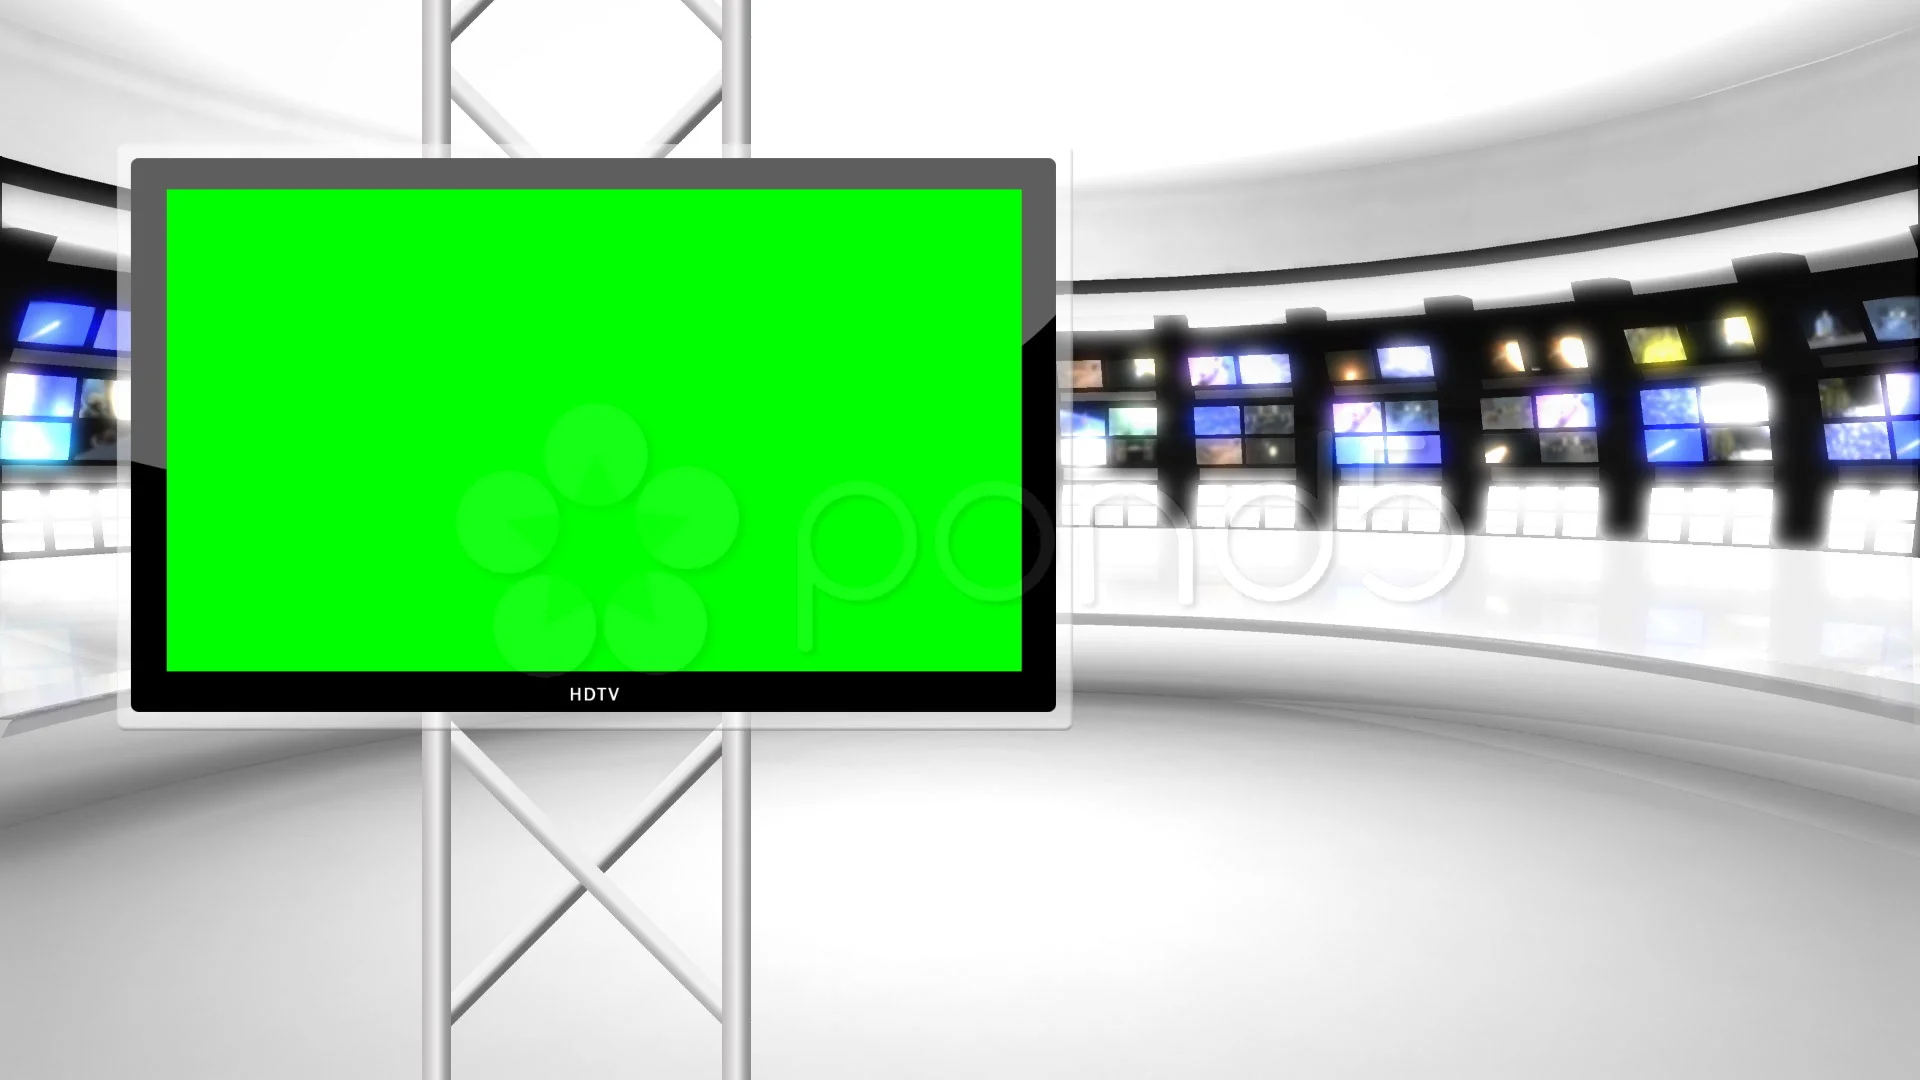 Virtual Green Screen: Bạn có muốn tham gia vào một trải nghiệm đầy thú vị với Virtual Green Screen? Hãy tưởng tượng bạn đang đứng trước màn hình xanh và được trang bị với nhiều công nghệ mới nhất để tạo ra một không gian sống động và chân thực nhất! Điều này sẽ giúp cho việc thực hiện các video hoặc dự án của bạn trở nên dễ dàng và hiệu quả hơn.